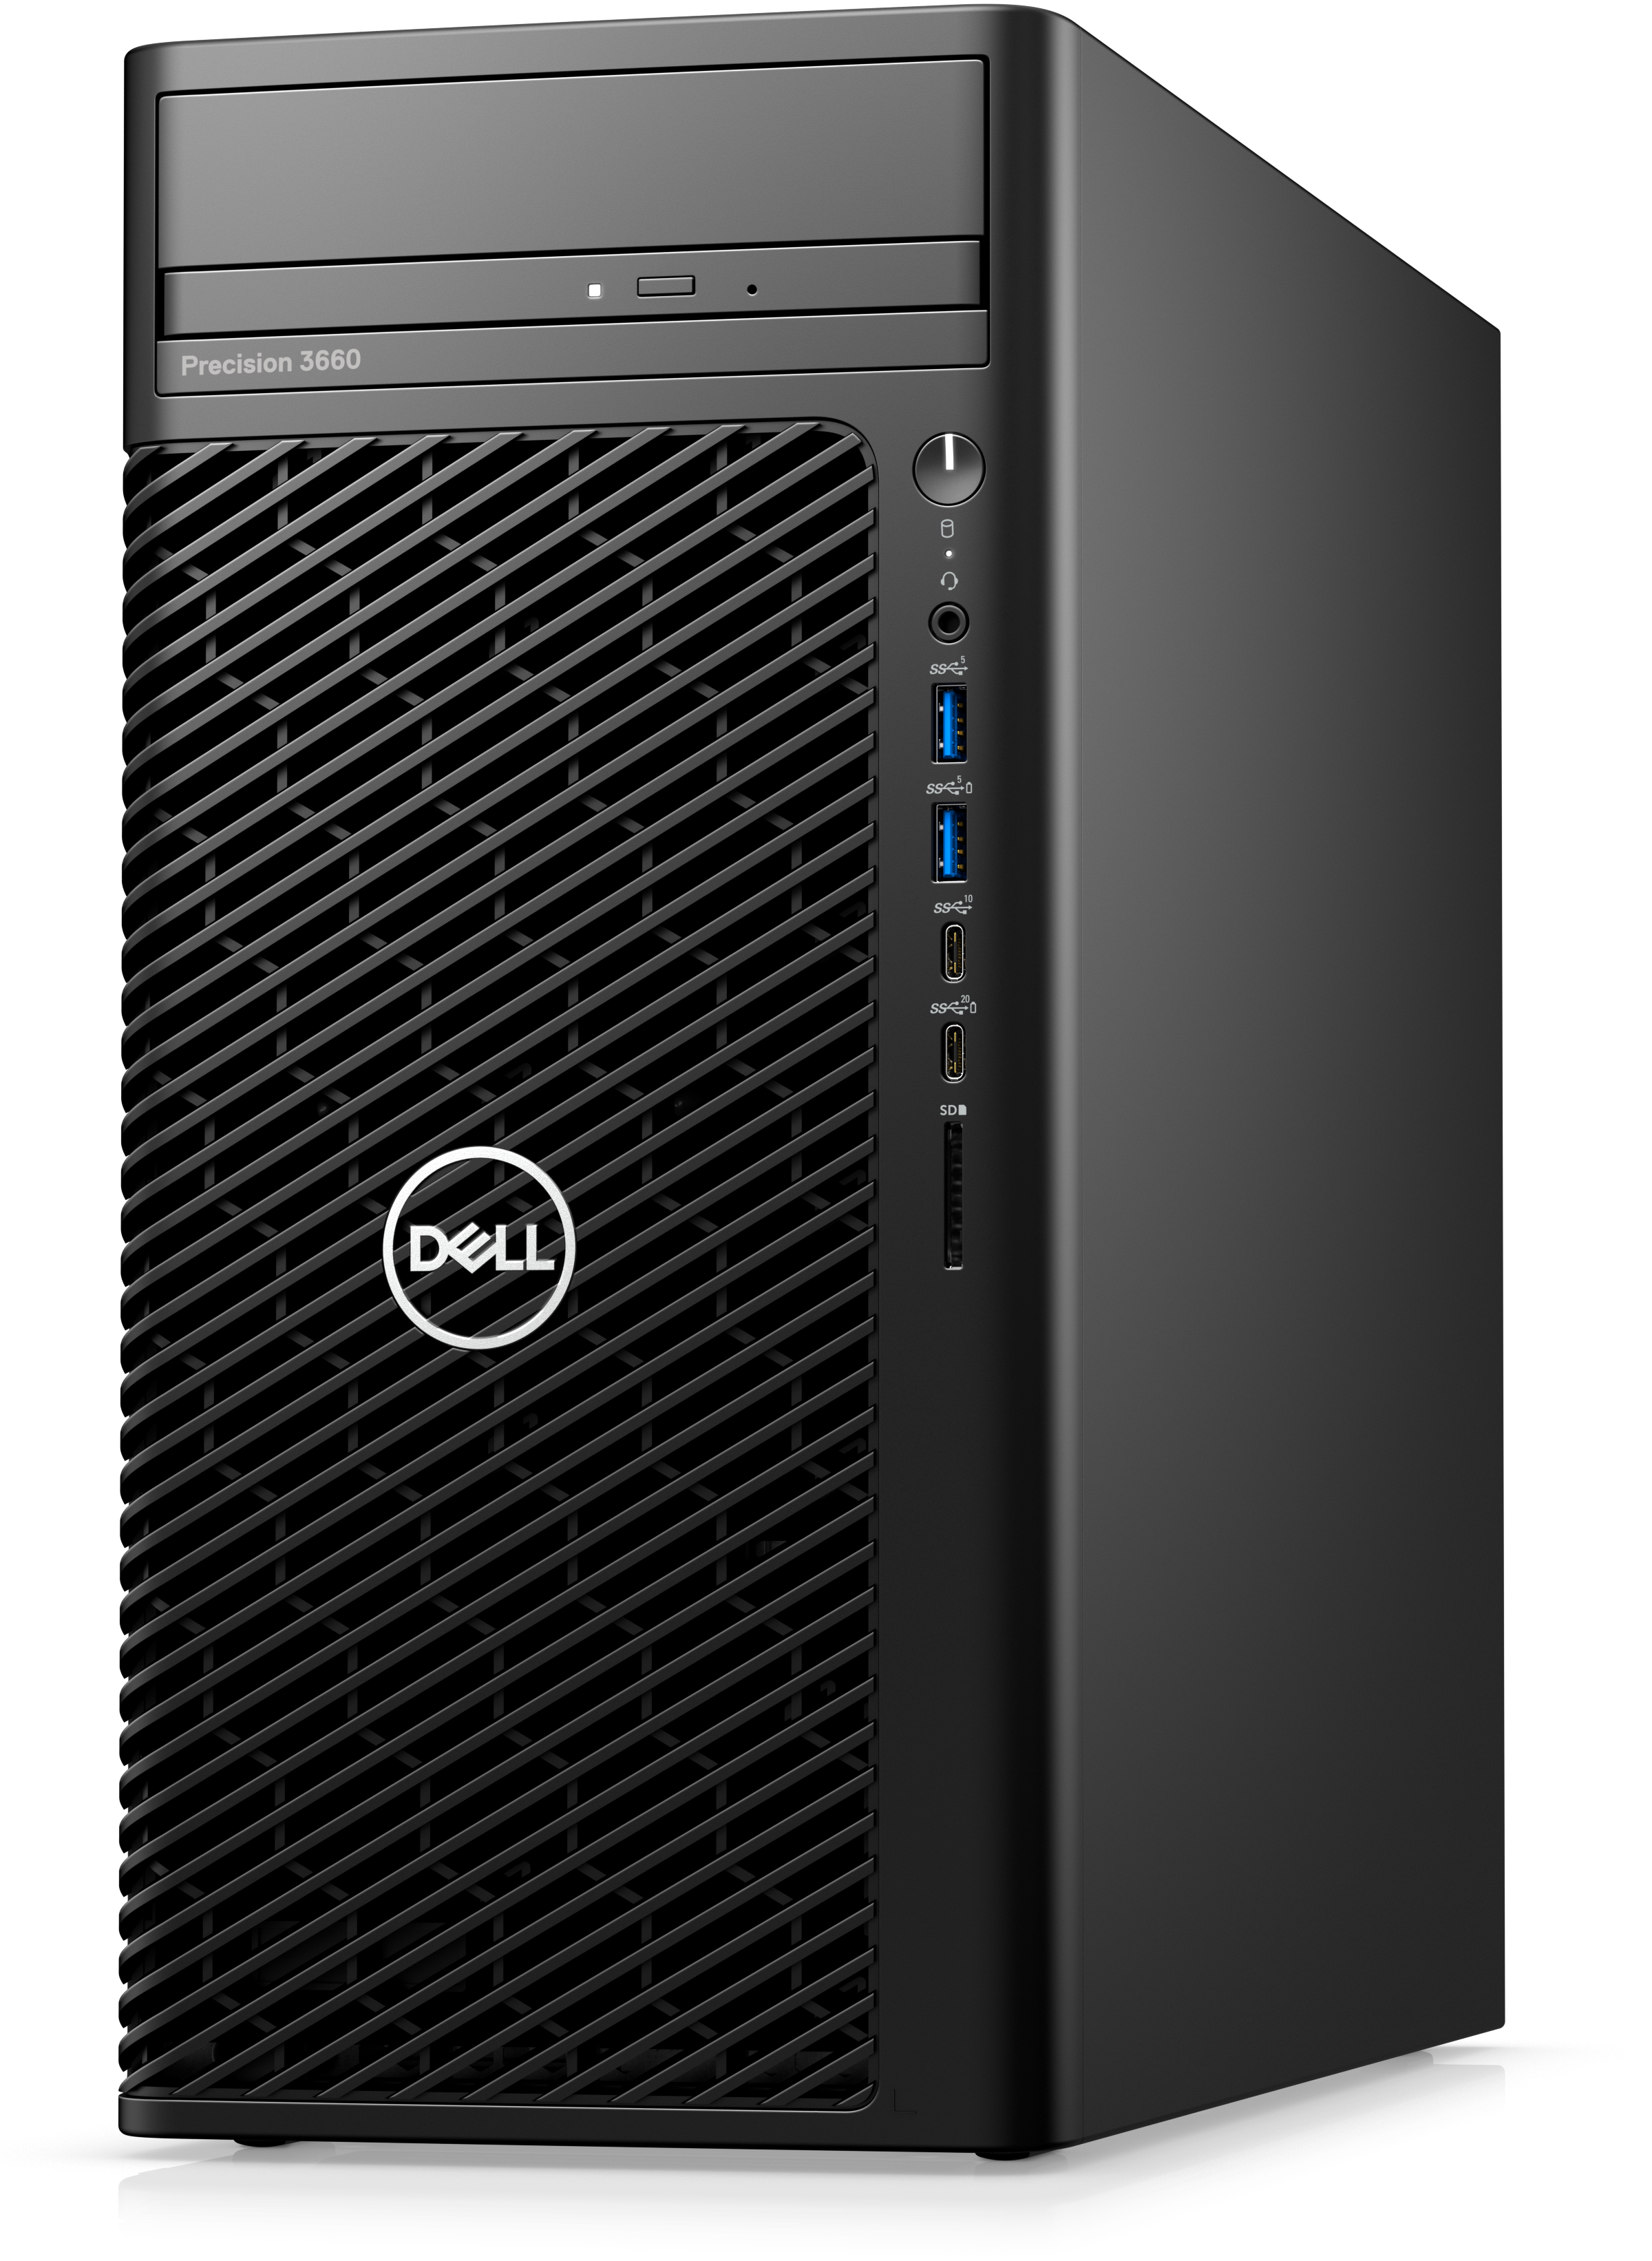 Dell Precision 3660, Intel Core i7-12700 (12 core 25MB cache), 16GB RAM, 512 SSD, No Monitor, DVDRW, 3 Yrs PS, 500W, NVIDIA T400, 4 GB GDDR6, 8.5kg, Ubuntu